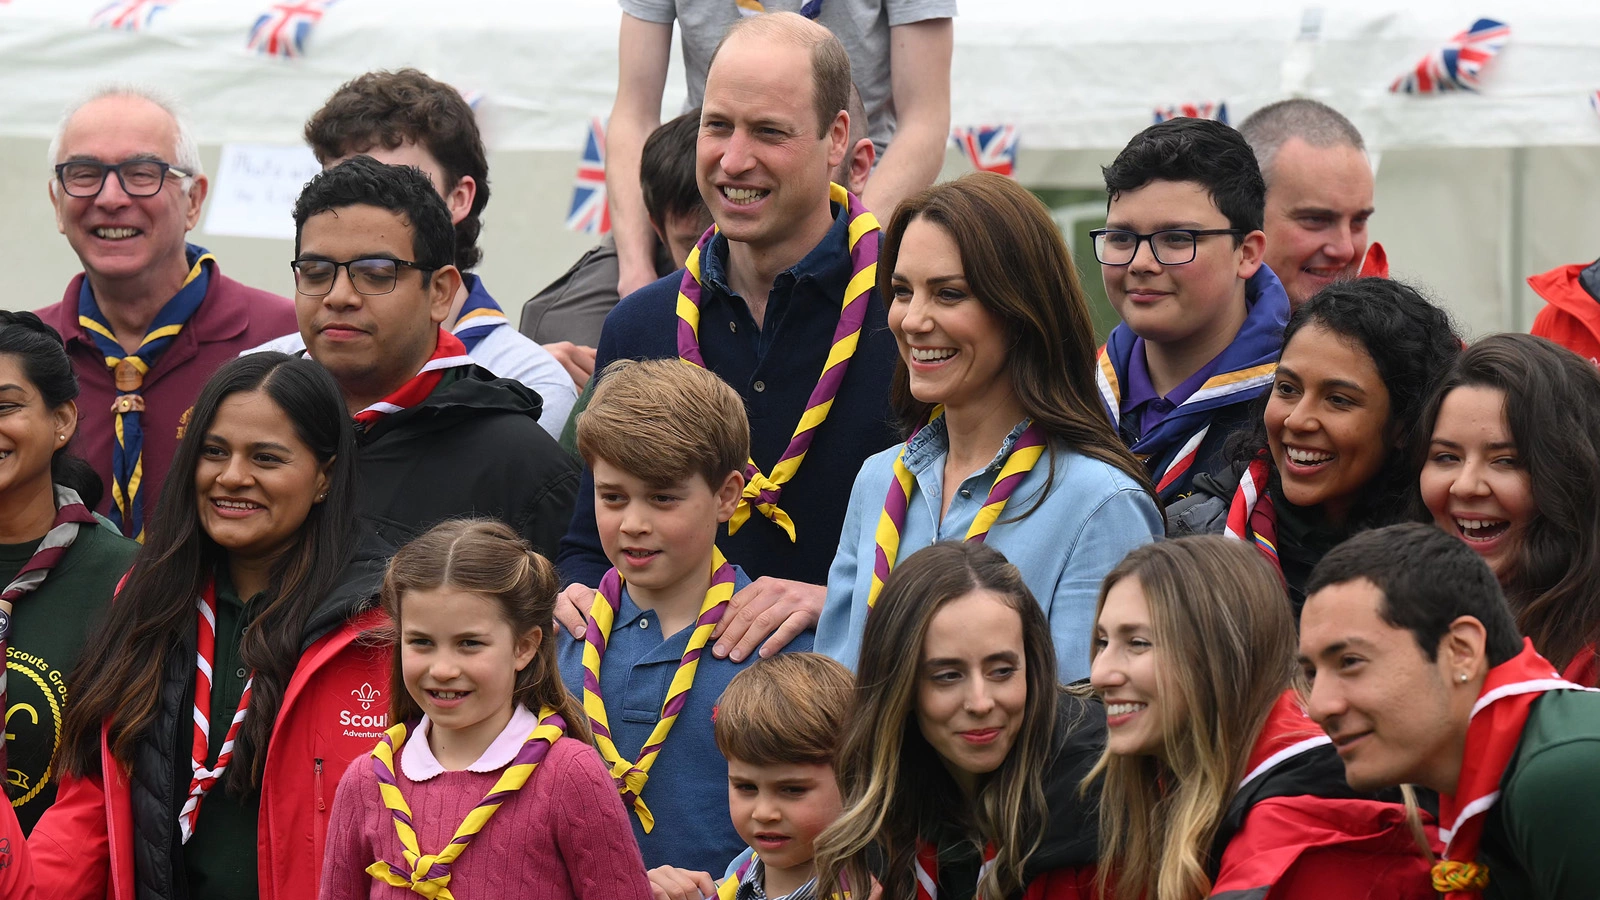 <p>Принц Уильям и Кейт Миддлтон со своими детьми принцем Джорджем, принцессой Шарлоттой и принцем Луи на мероприятии Coronation Big Help Out с местными скаутами в Слау, Великобритания</p>